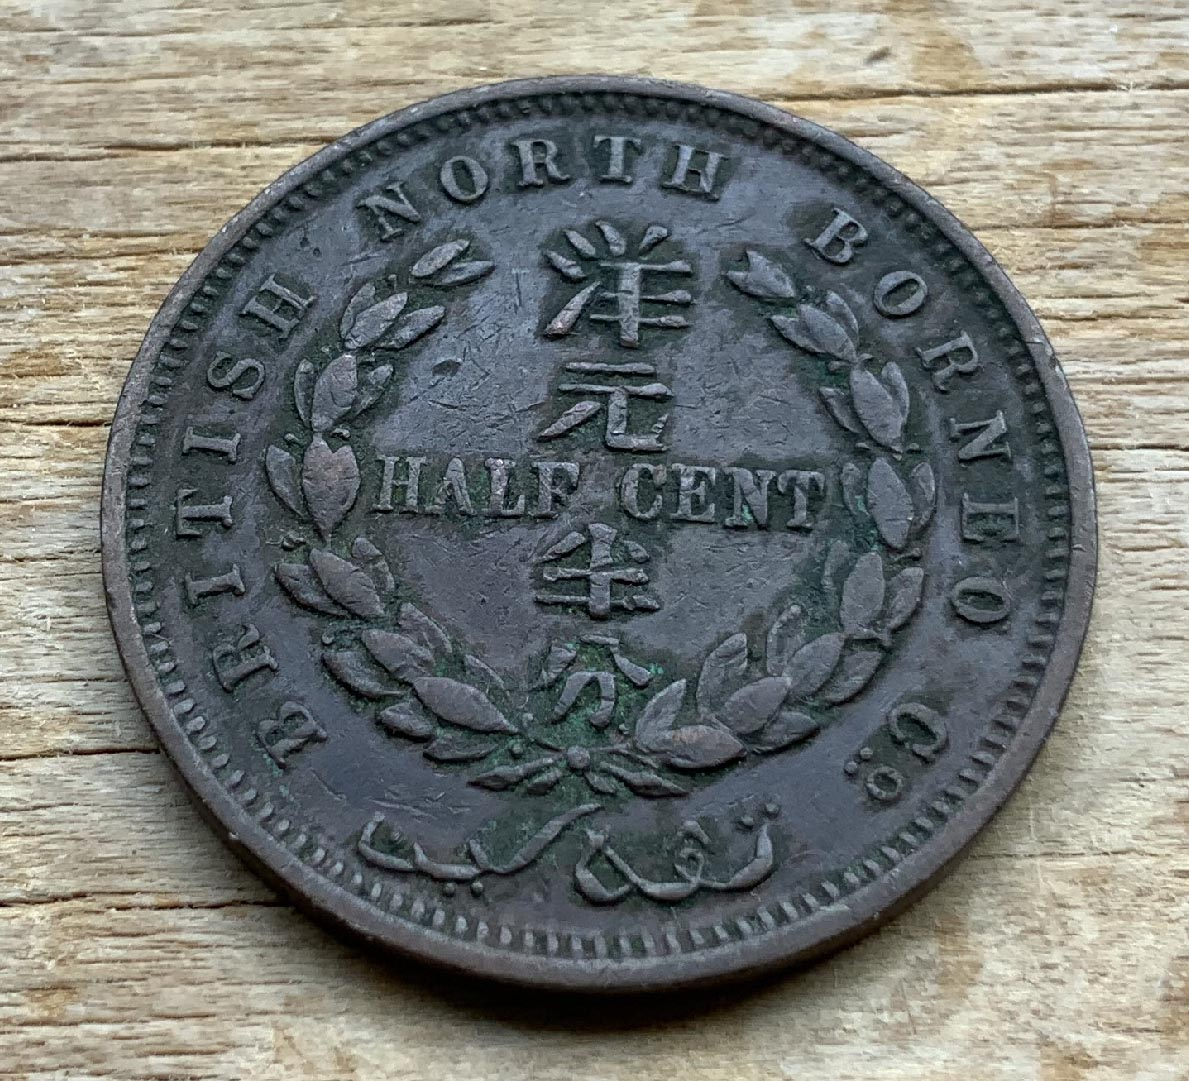 Rare 1907 North Boneo half cent coin C321